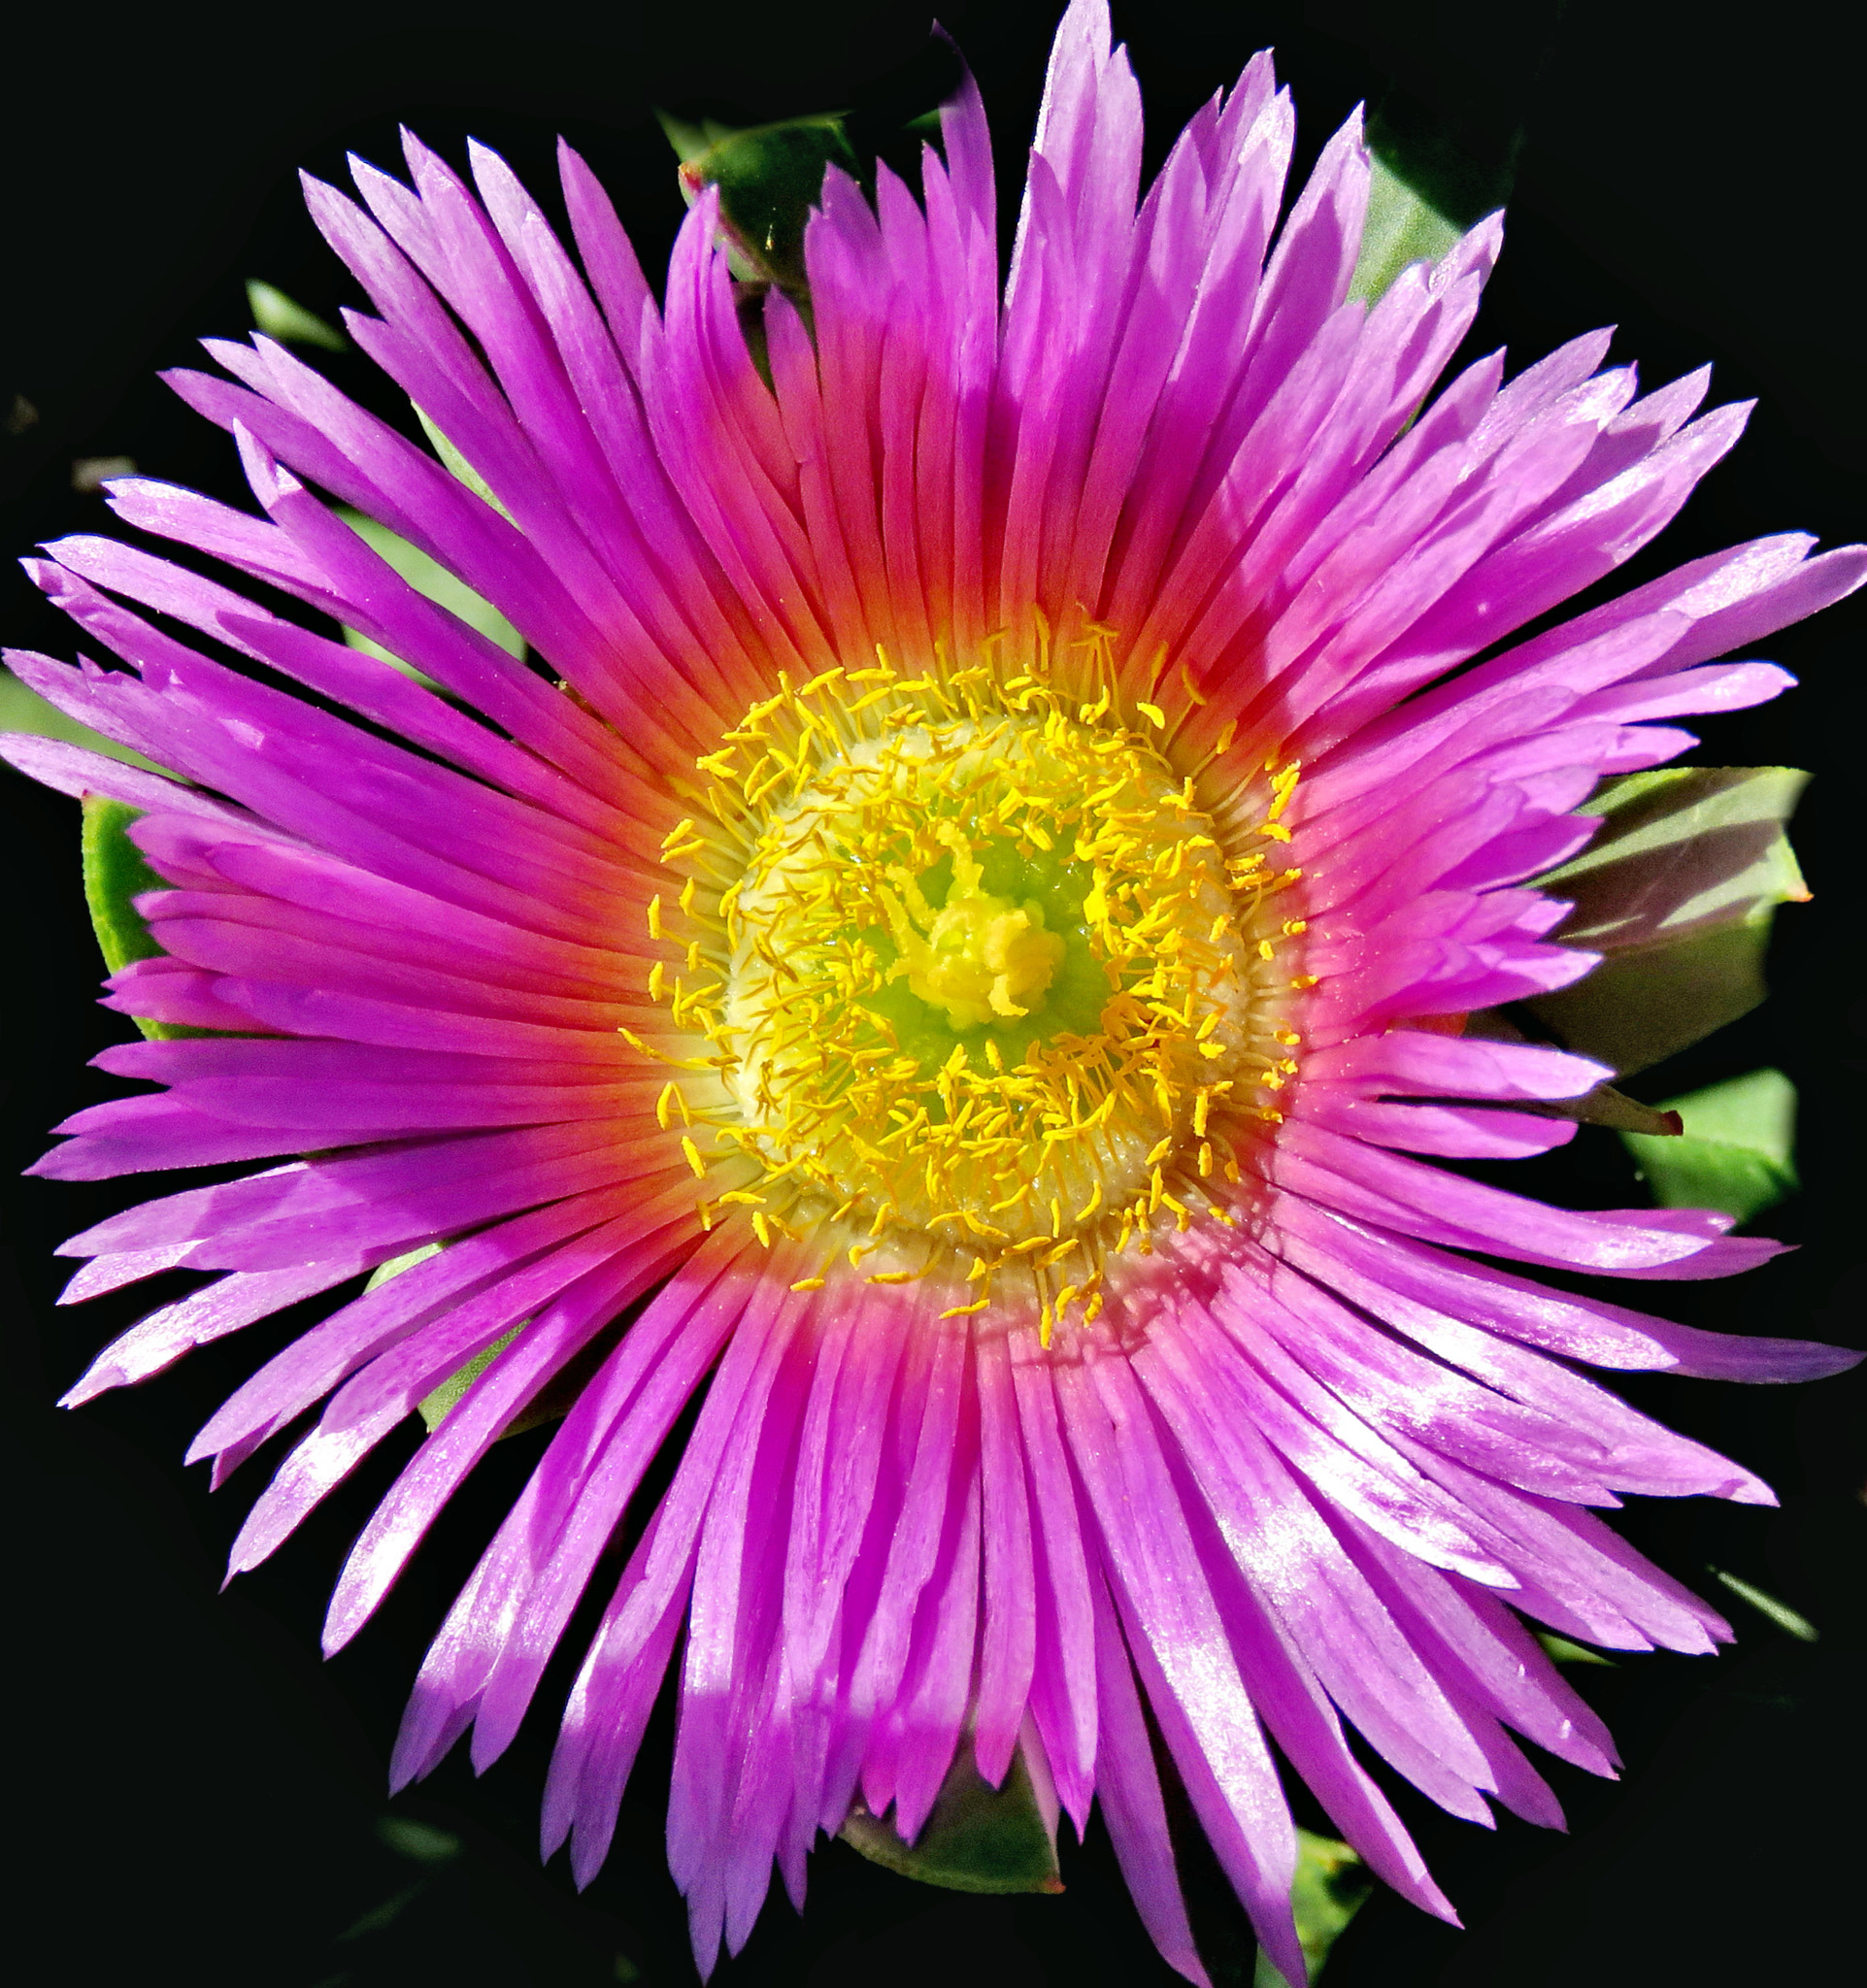 Canon PowerShot SX60 HS + 3.8 - 247.0 mm sample photo. A purple dandelion flower photography